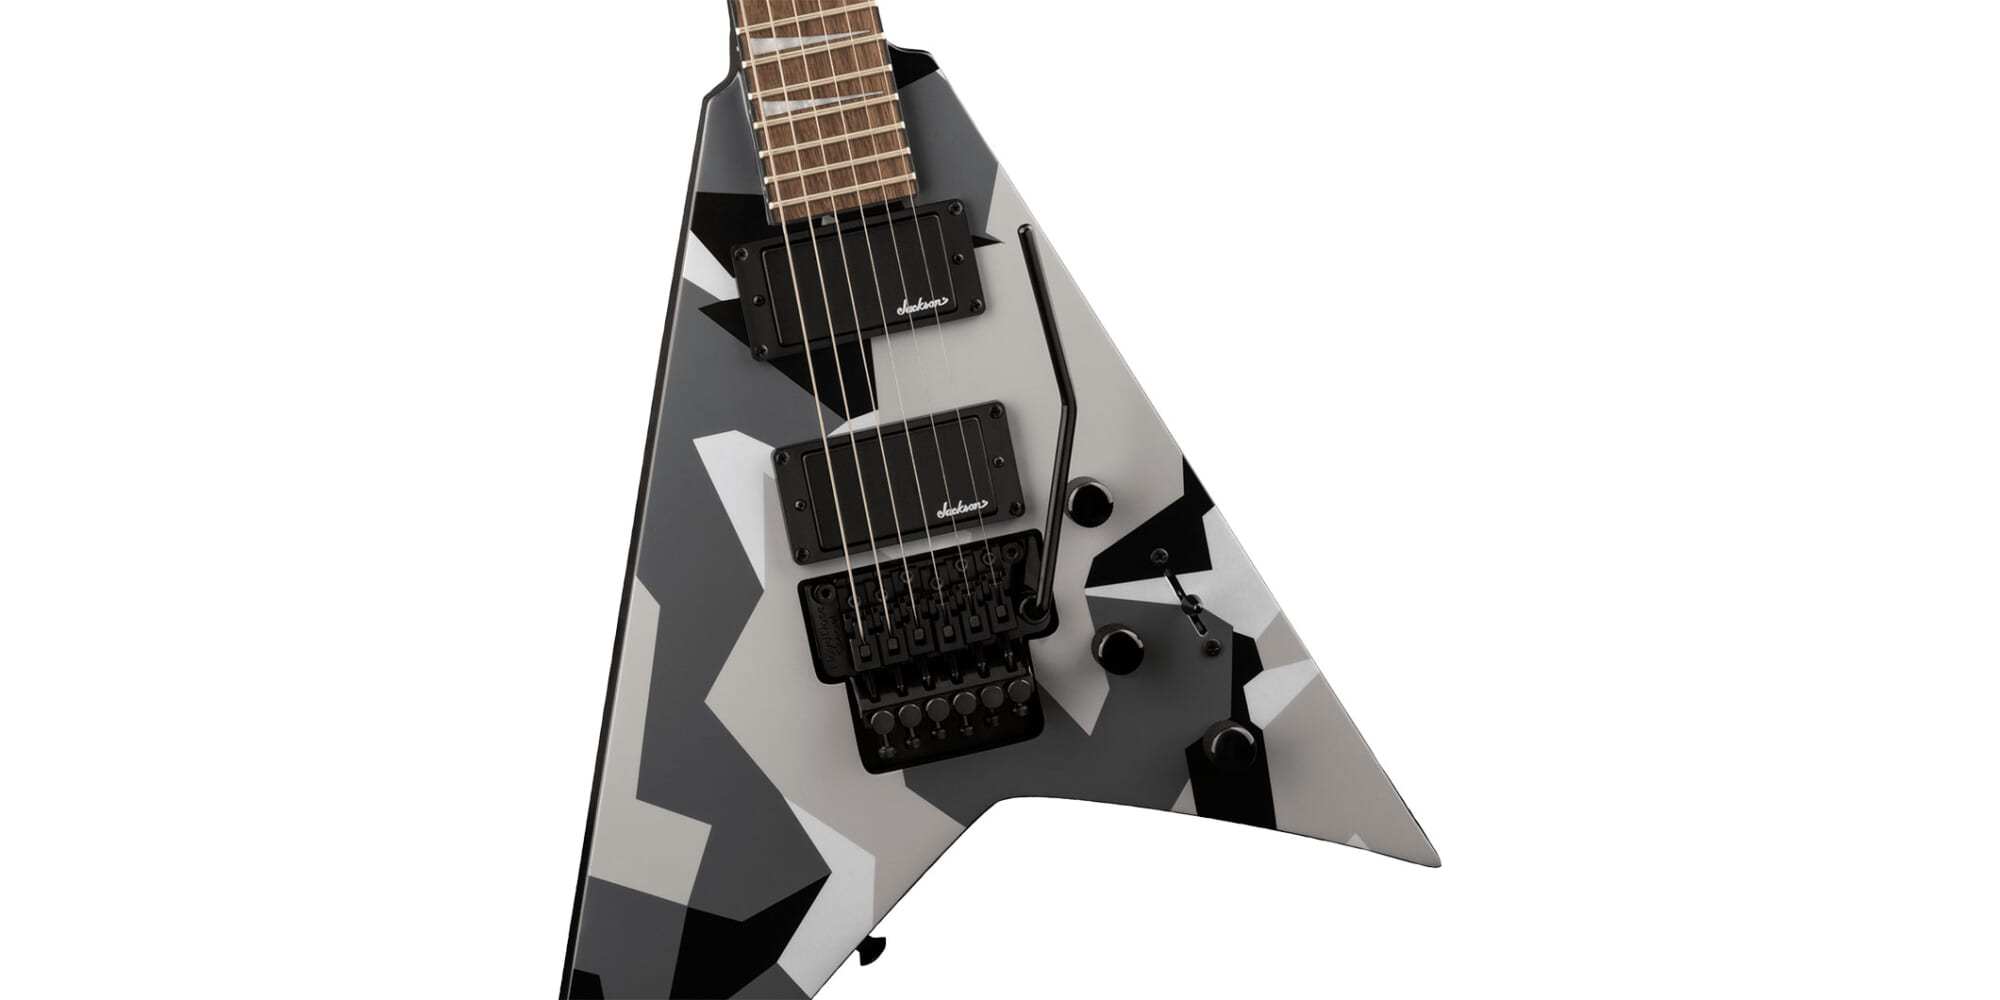 ジャクソンXシリーズのローズ・モデルに新たな迷彩柄のギターが仲間入り